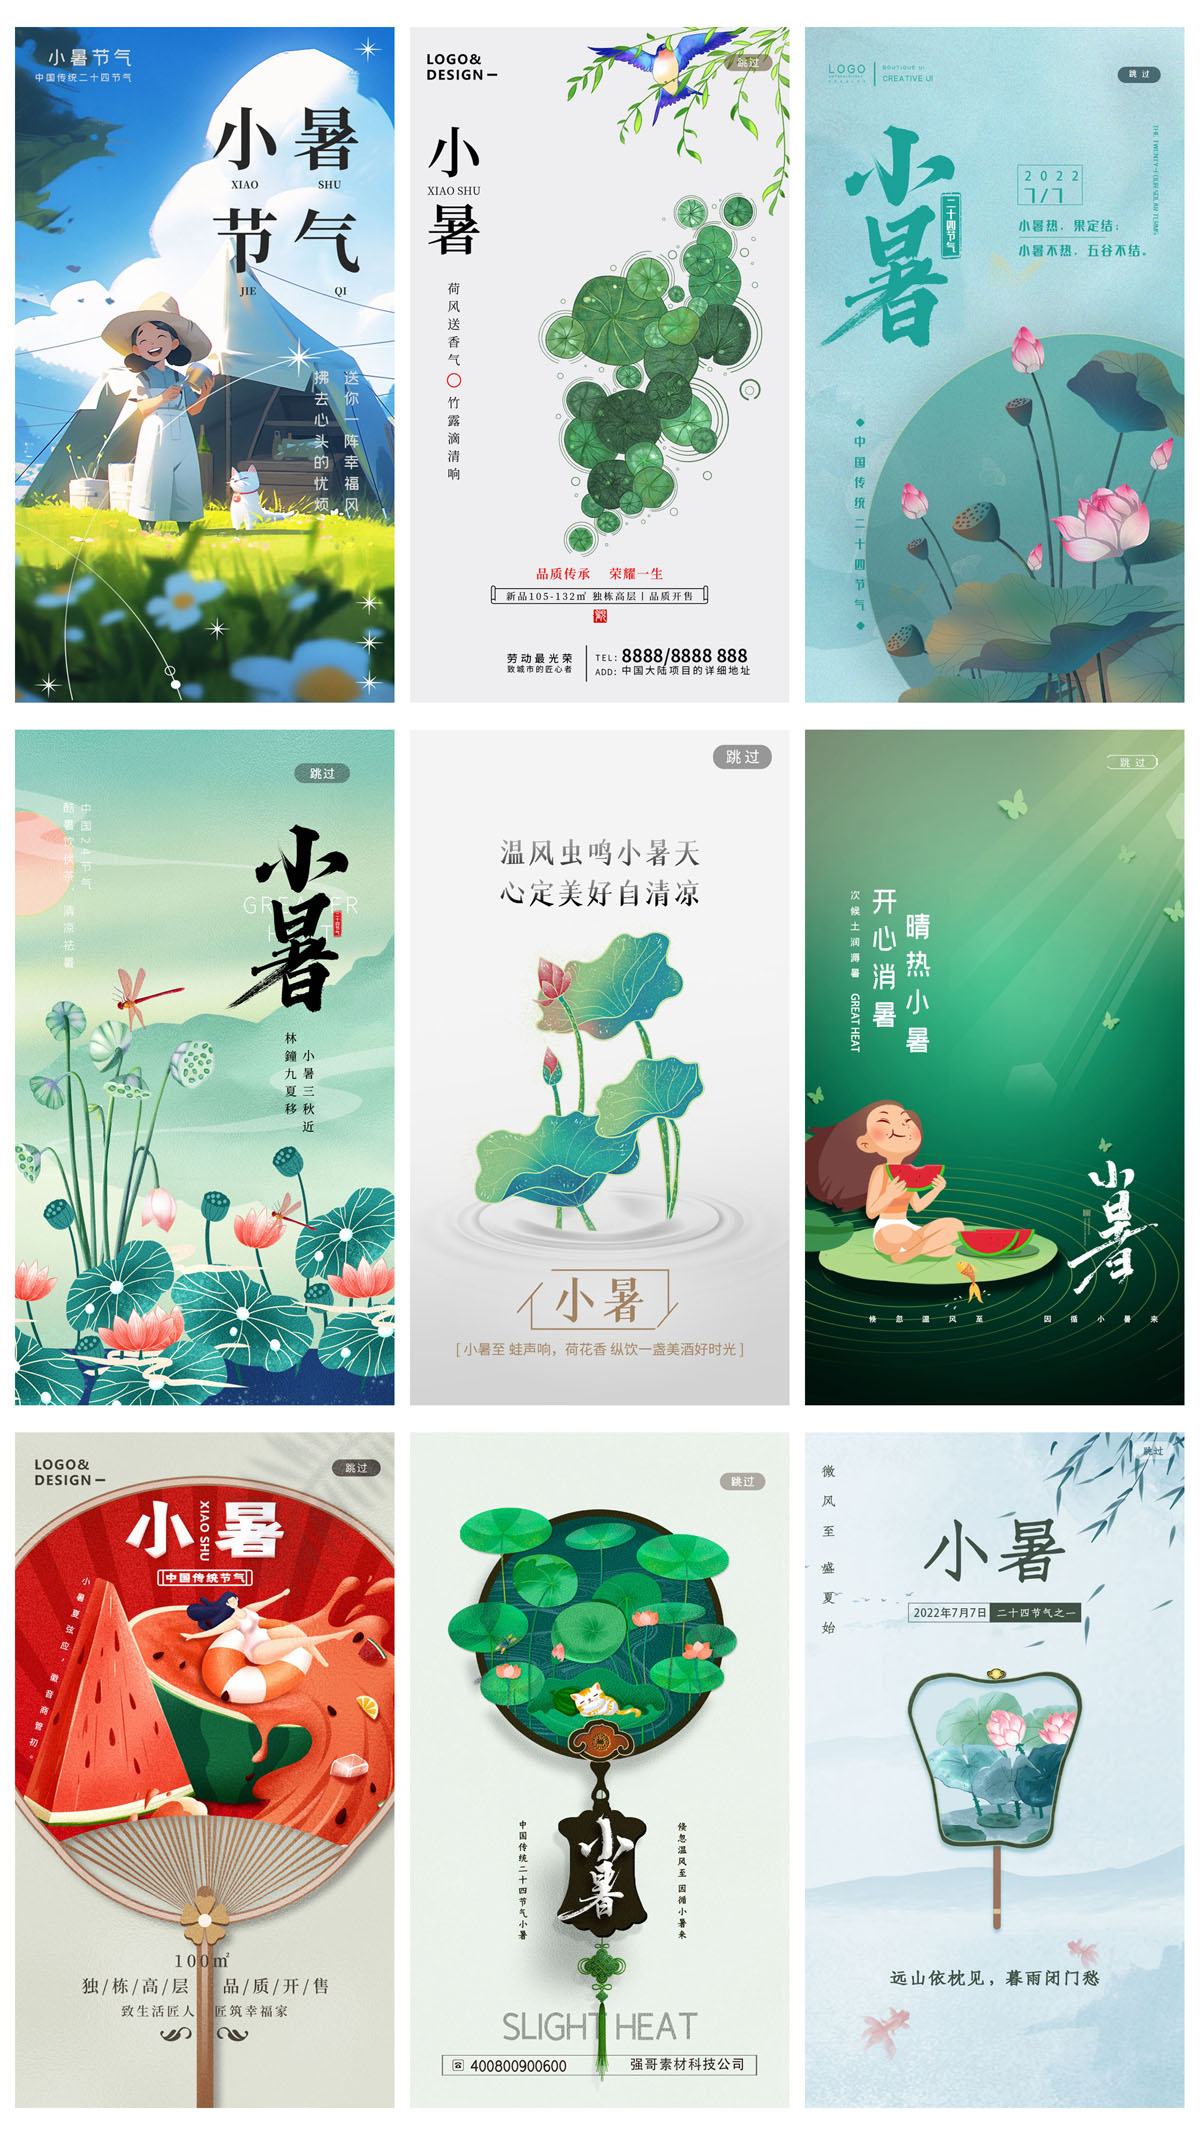 93款中国风24节气小暑宣传海报PSD模板 设计素材 第15张